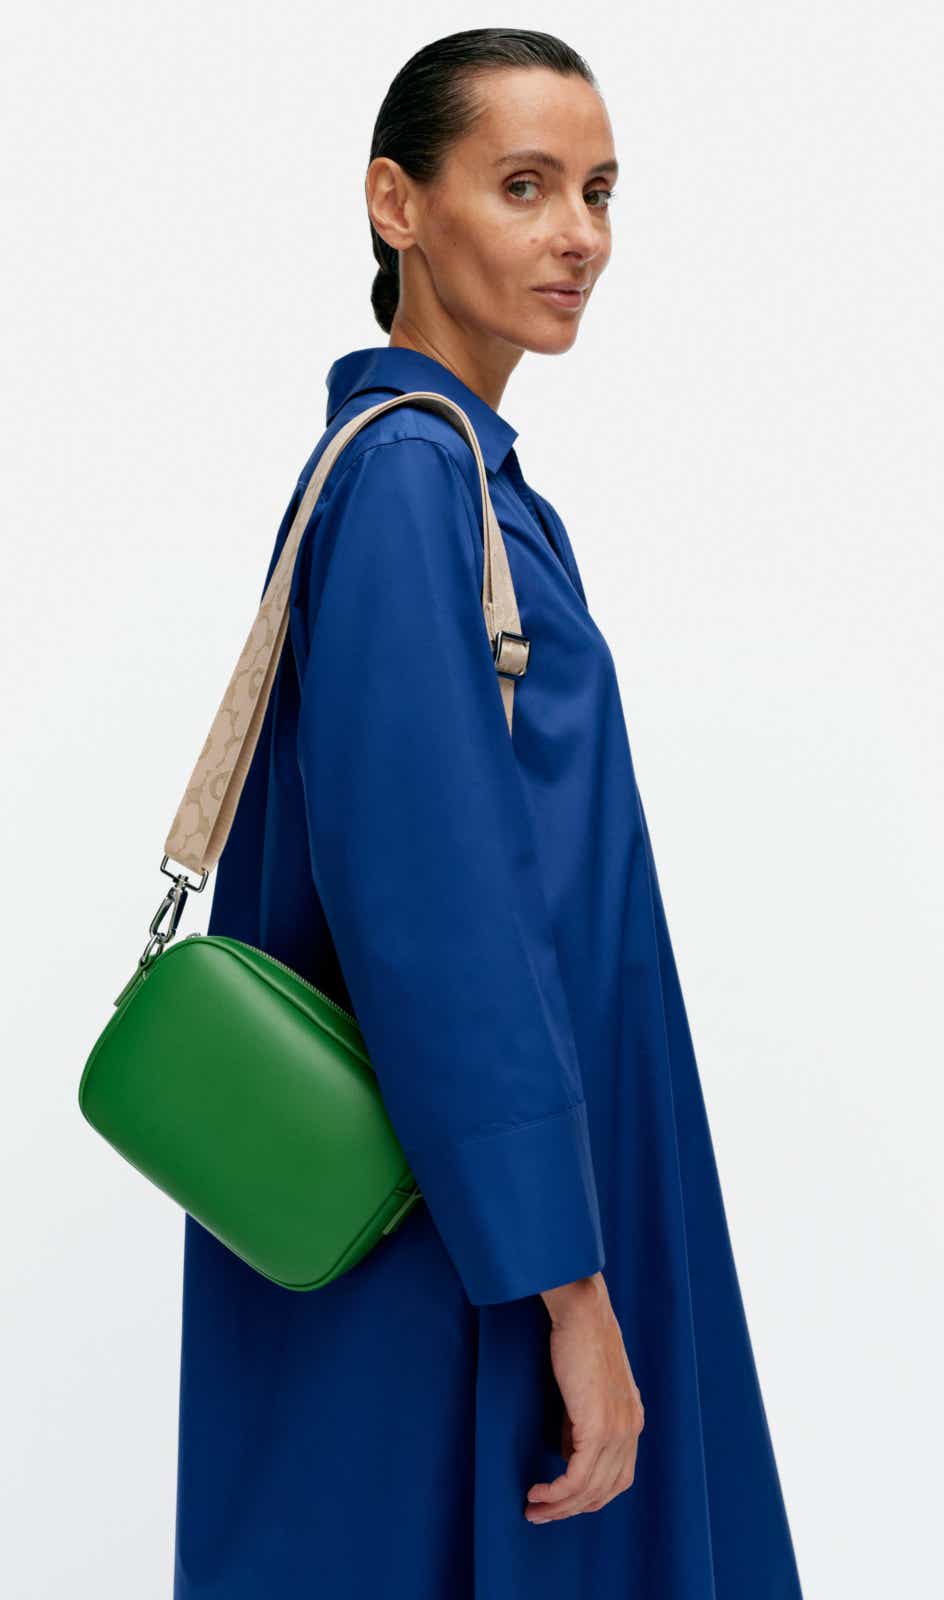 Soft Gratha shoulder bag – 15 x 22 x 5 cm – soft full grain leather